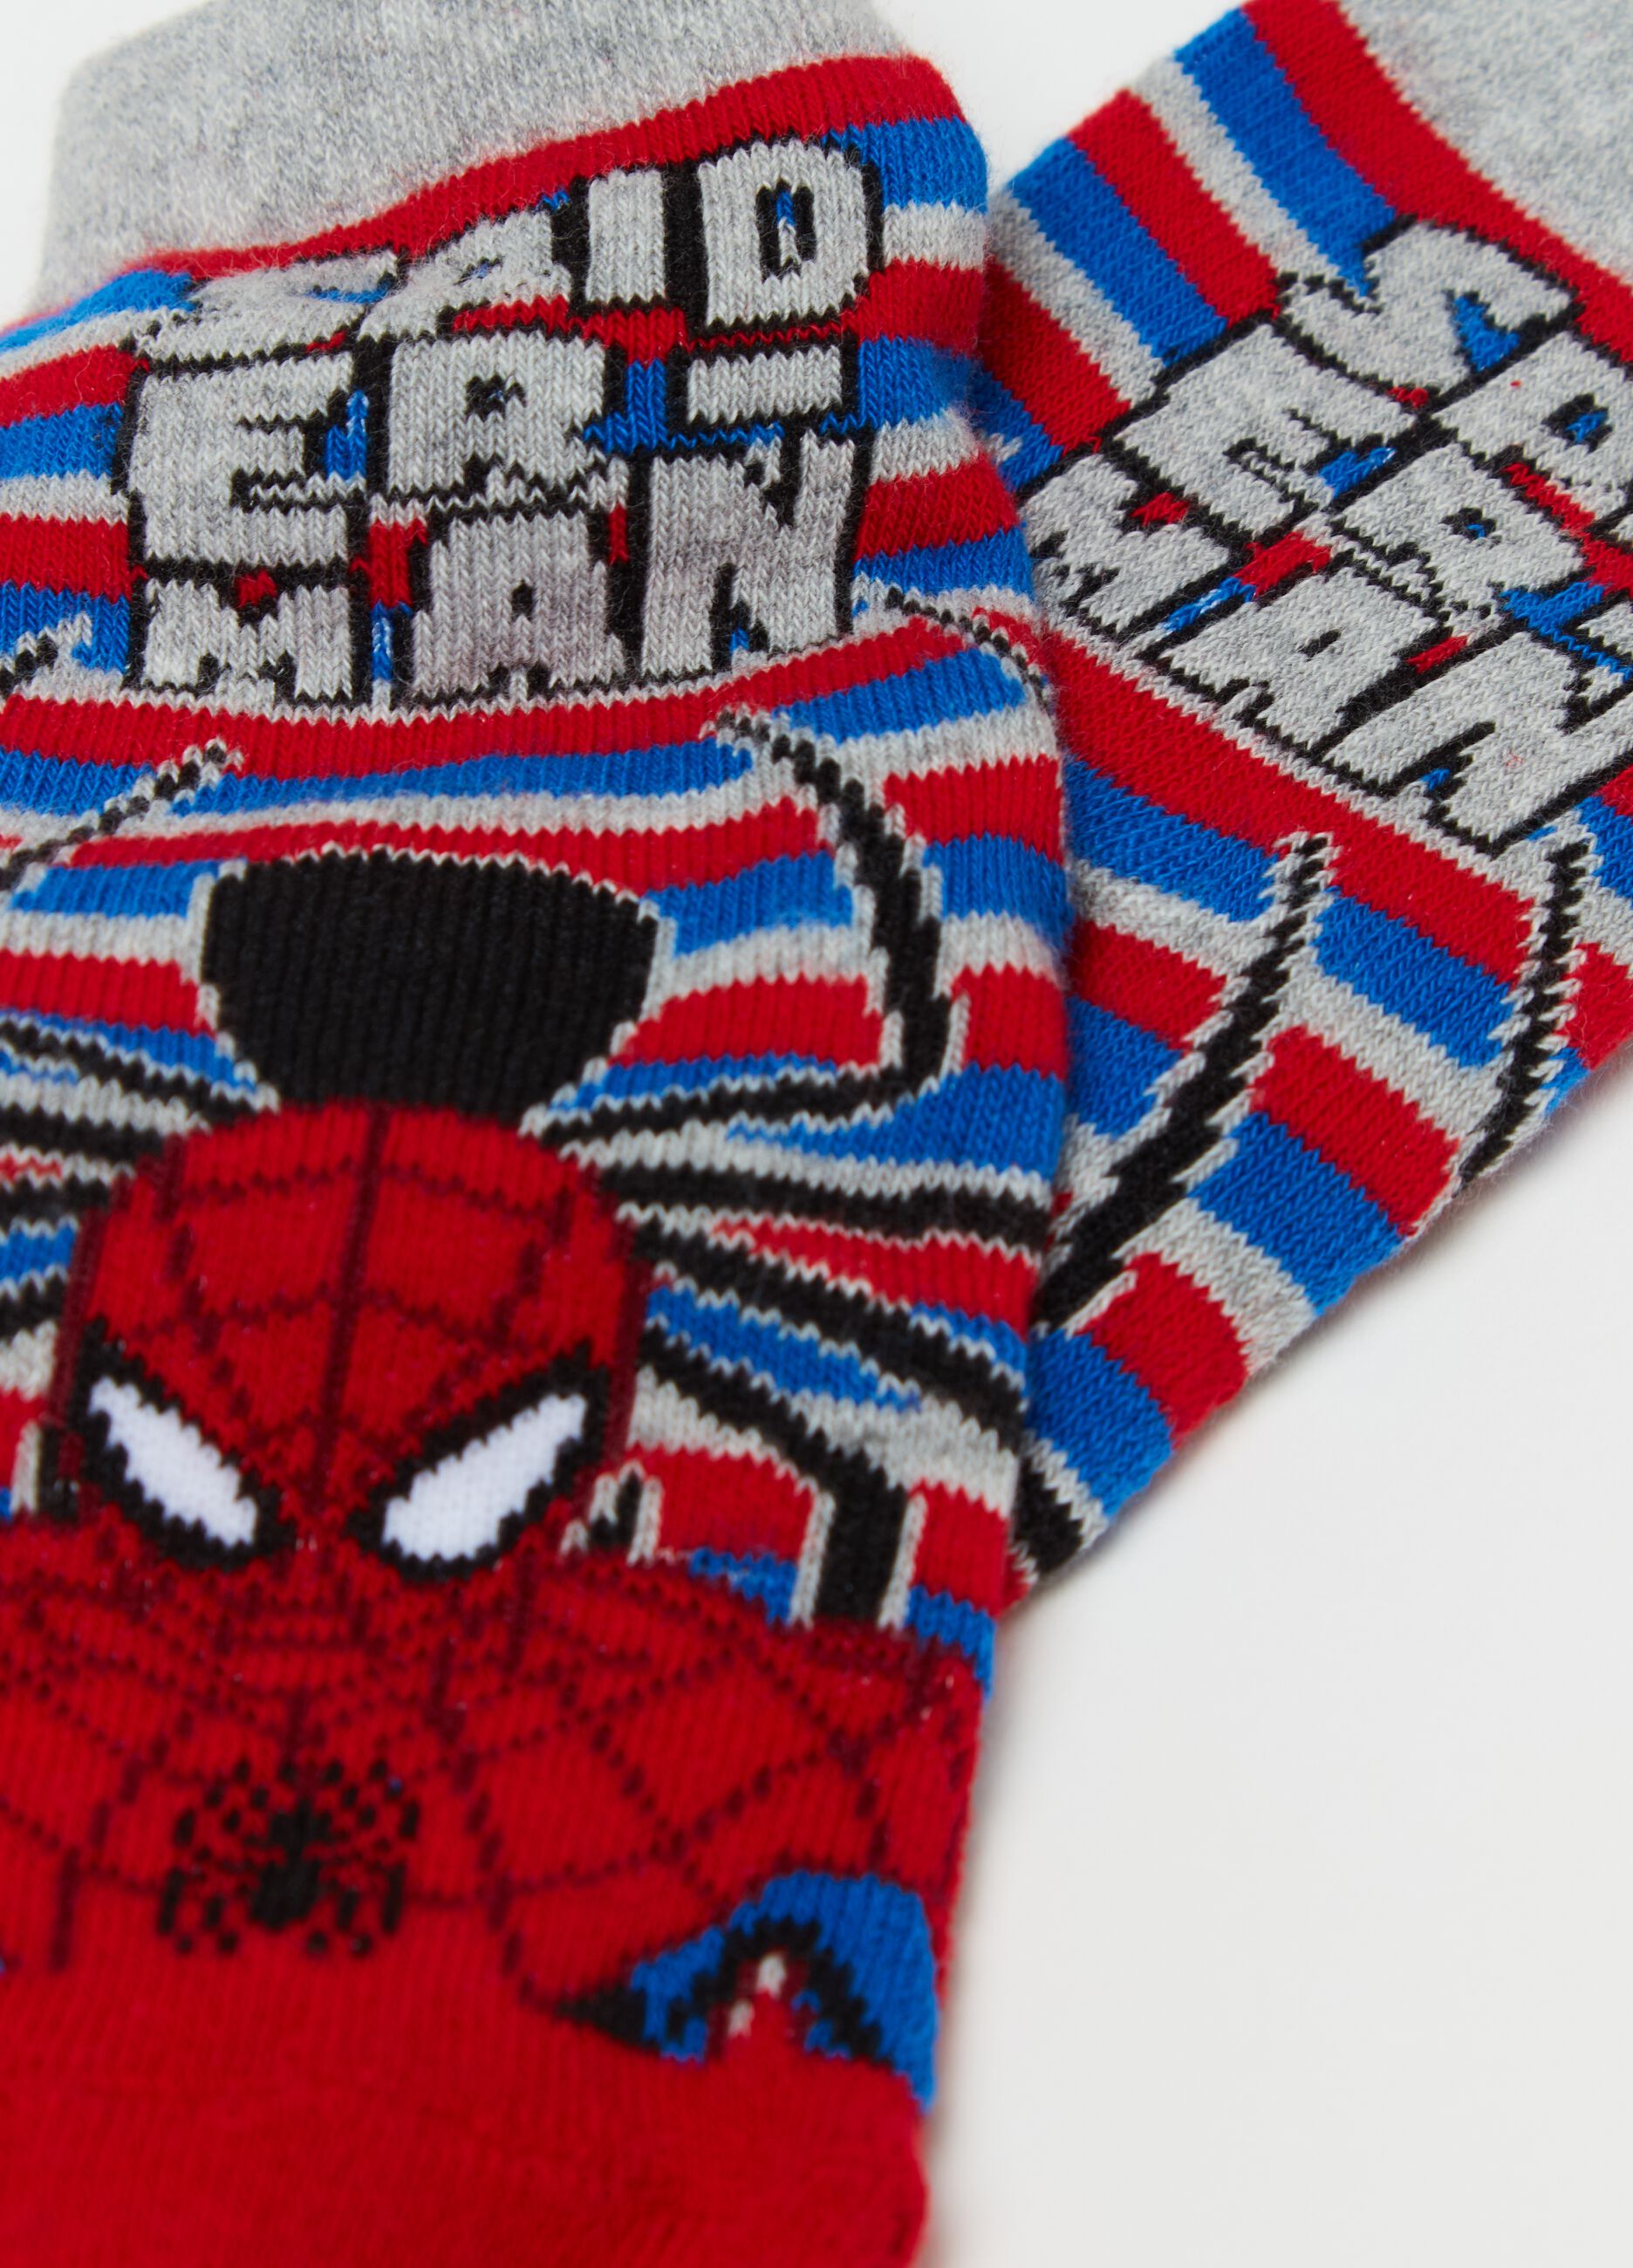 Calcetines antideslizantes con estampado Spider-Man